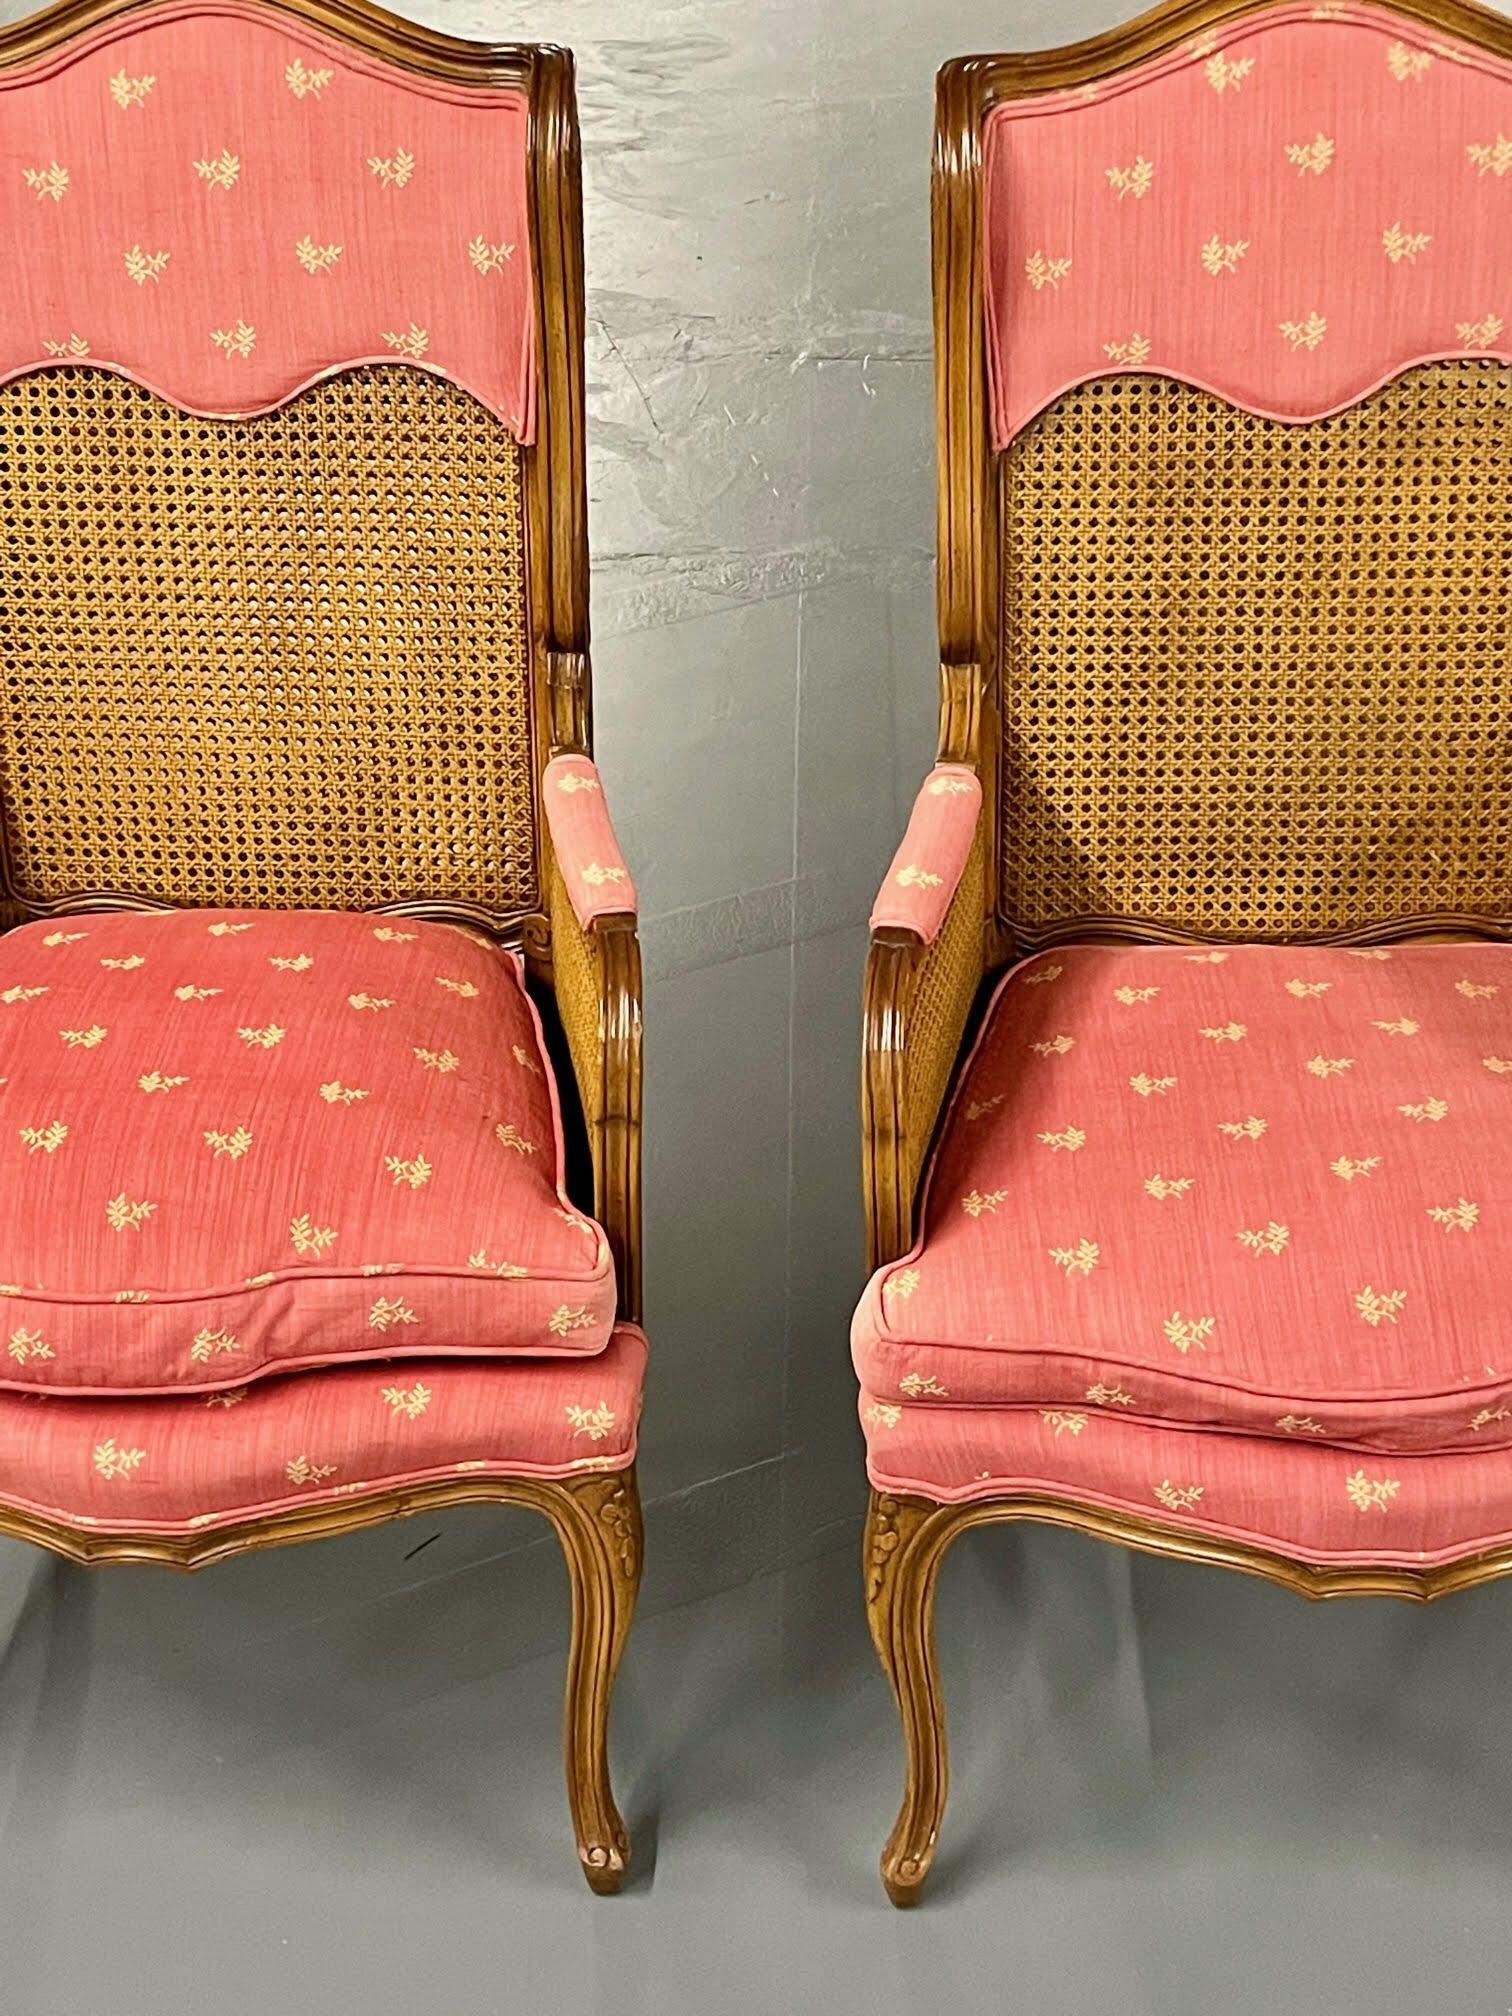 Paar französische Beistell-/Sessel aus Schilfrohr im Louis XV-Stil, Ohrensessel, Frankreich, 1960er Jahre.

Dieses fein geschnitzte Paar Sessel mit doppelter Rohrrückenlehne und Schilfrohrlehne ist bezeichnend für die Zeit mit hohem Stil und